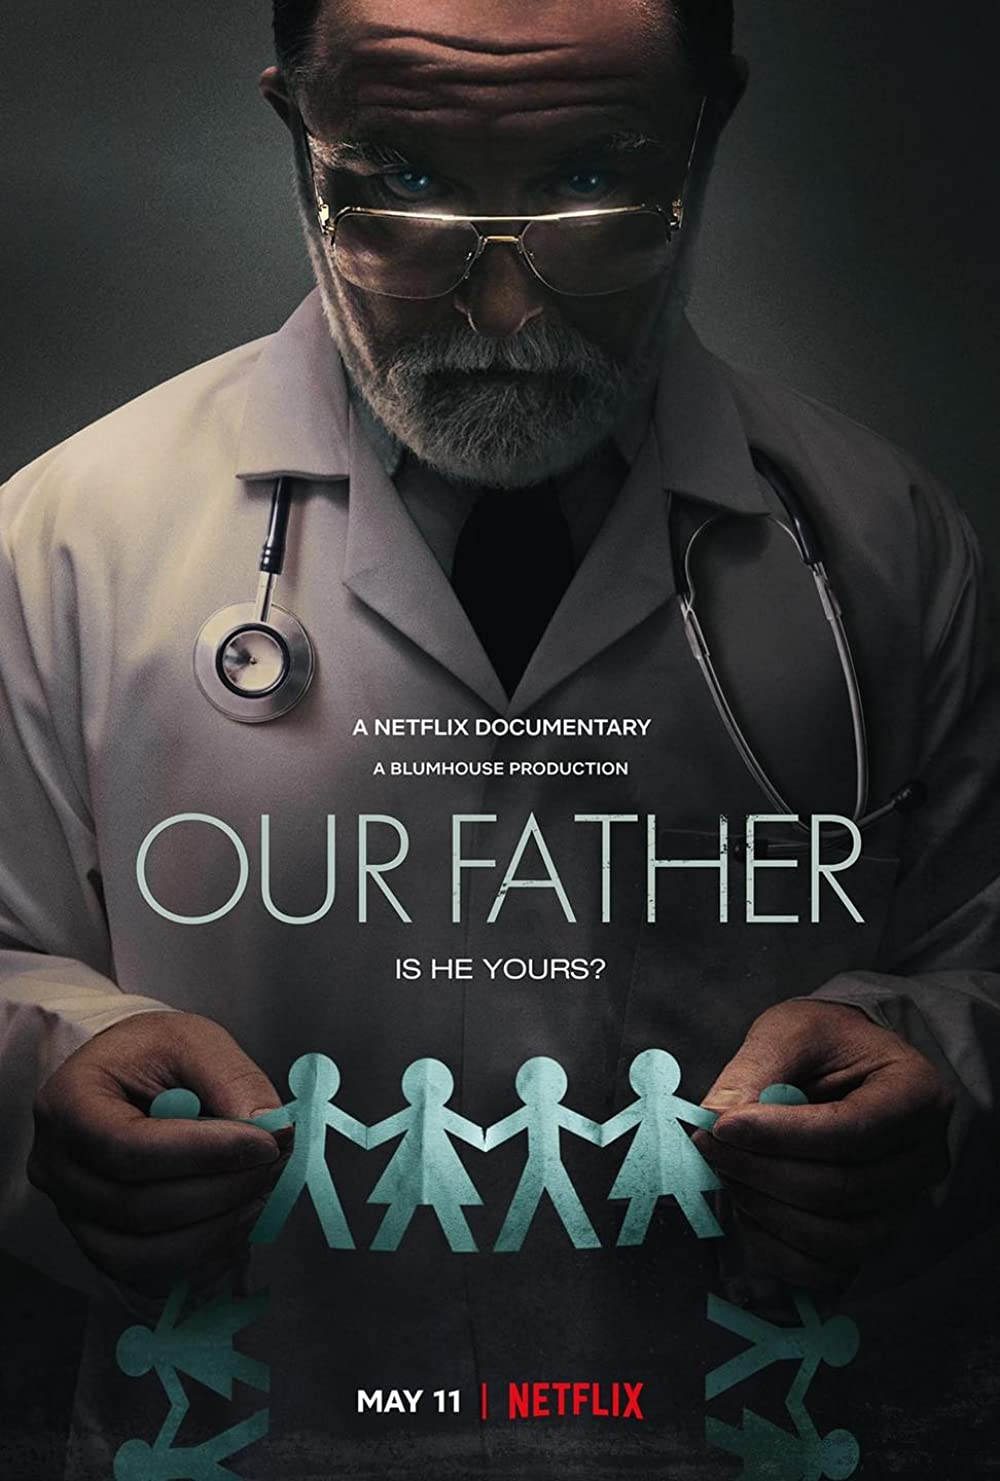 Cha chúng ta: Bí mật của bác sĩ Cline – Our Father